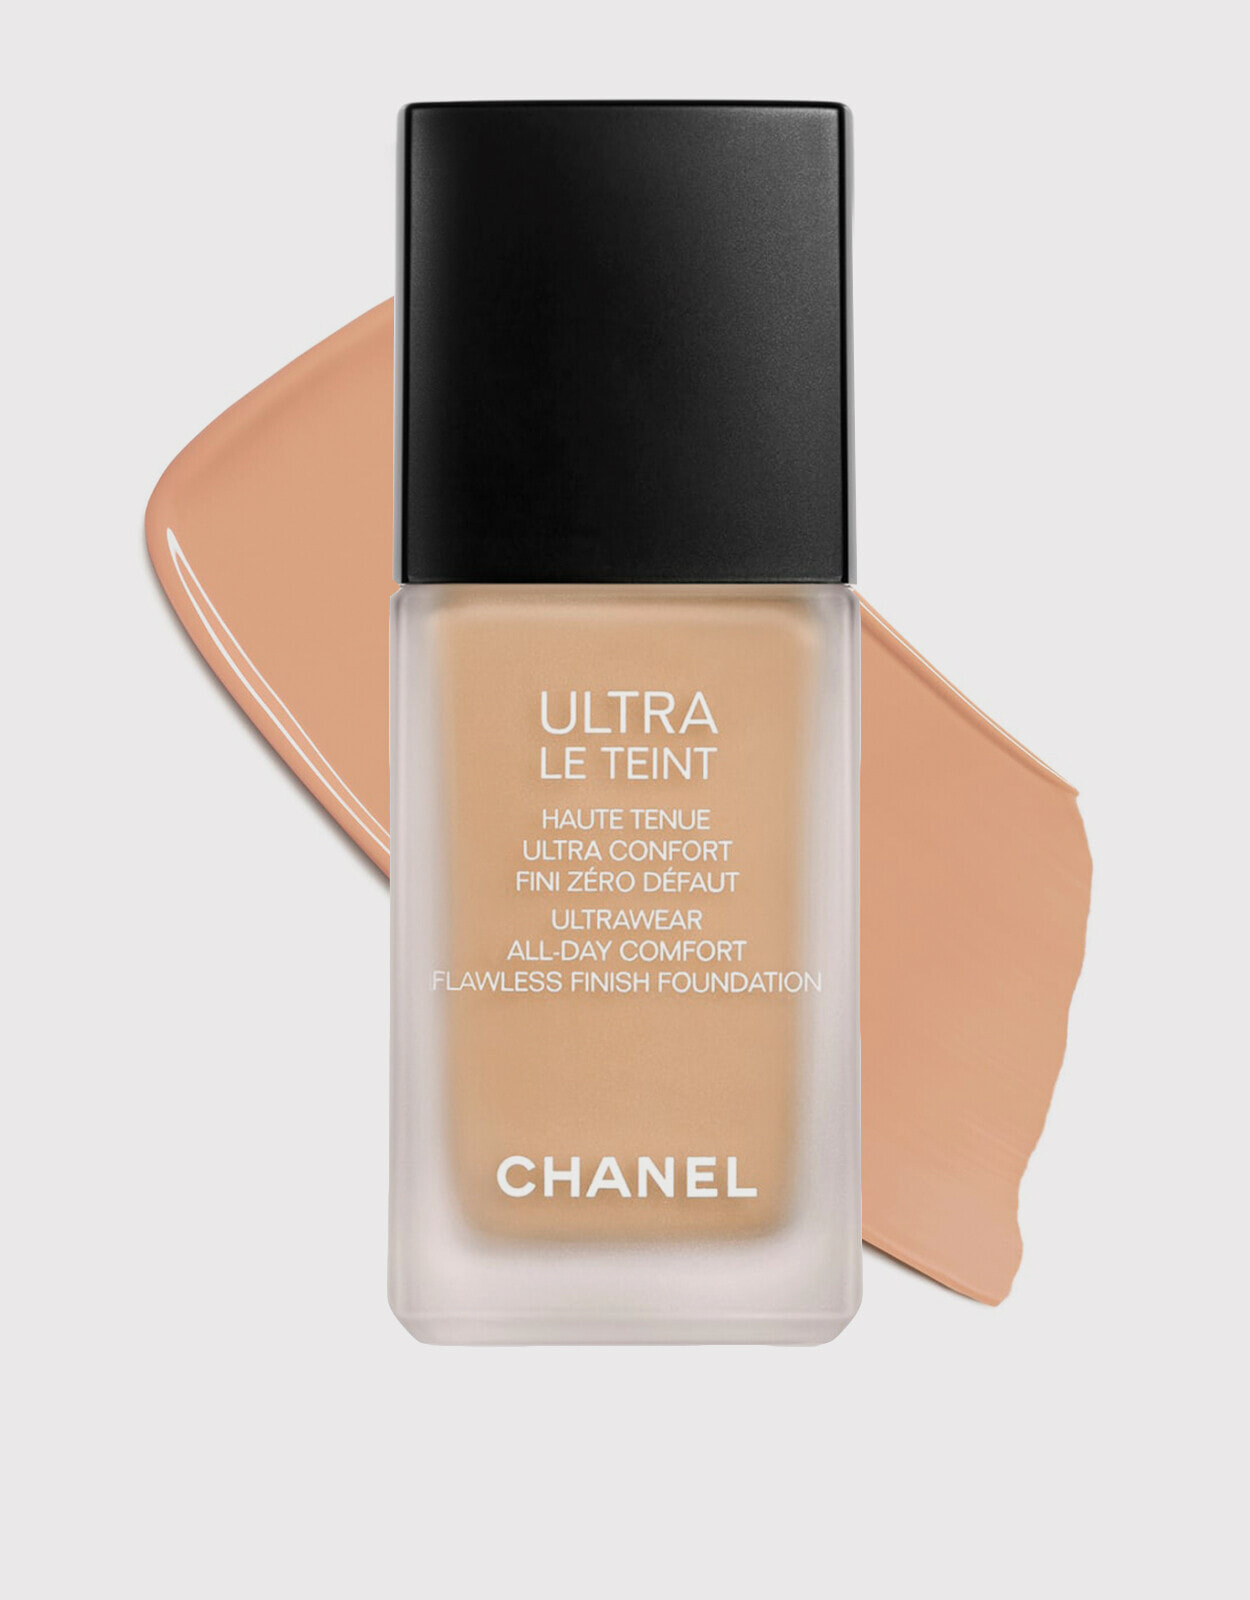 Chanel Ultra Le Teint Velvet spf15 #B70